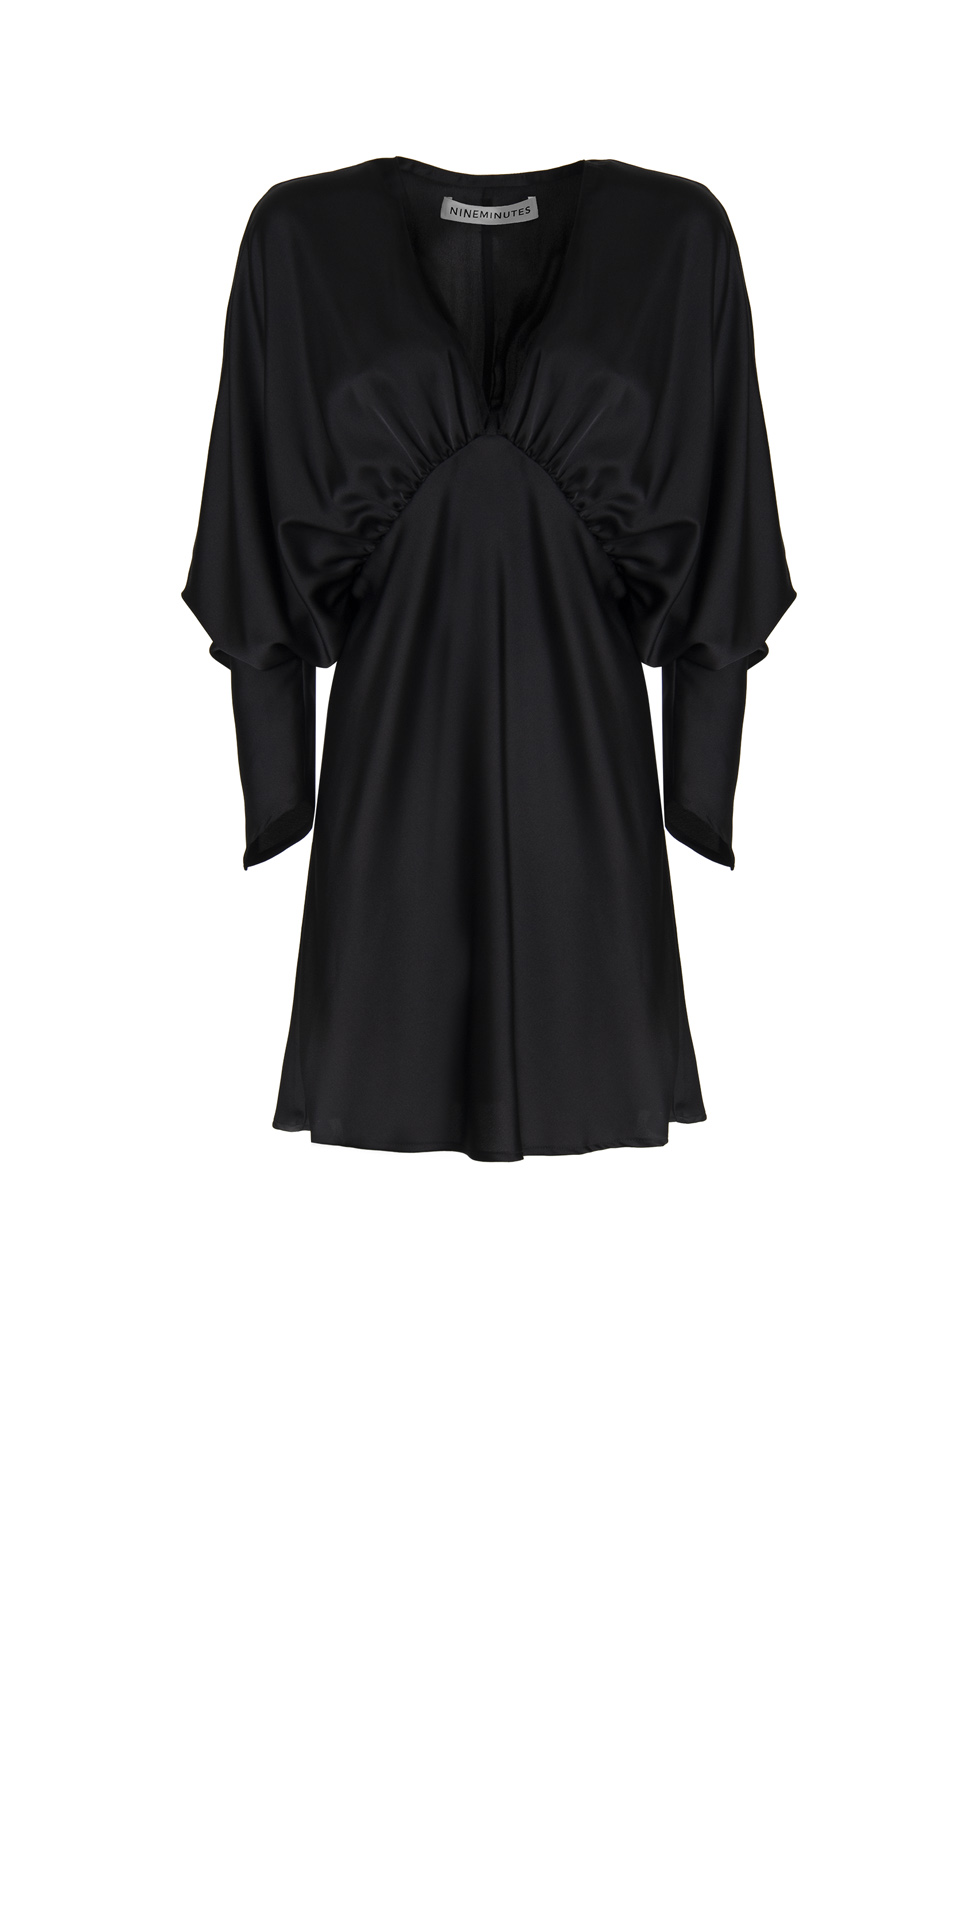 THE KIMO SHORT DRESS BLACK